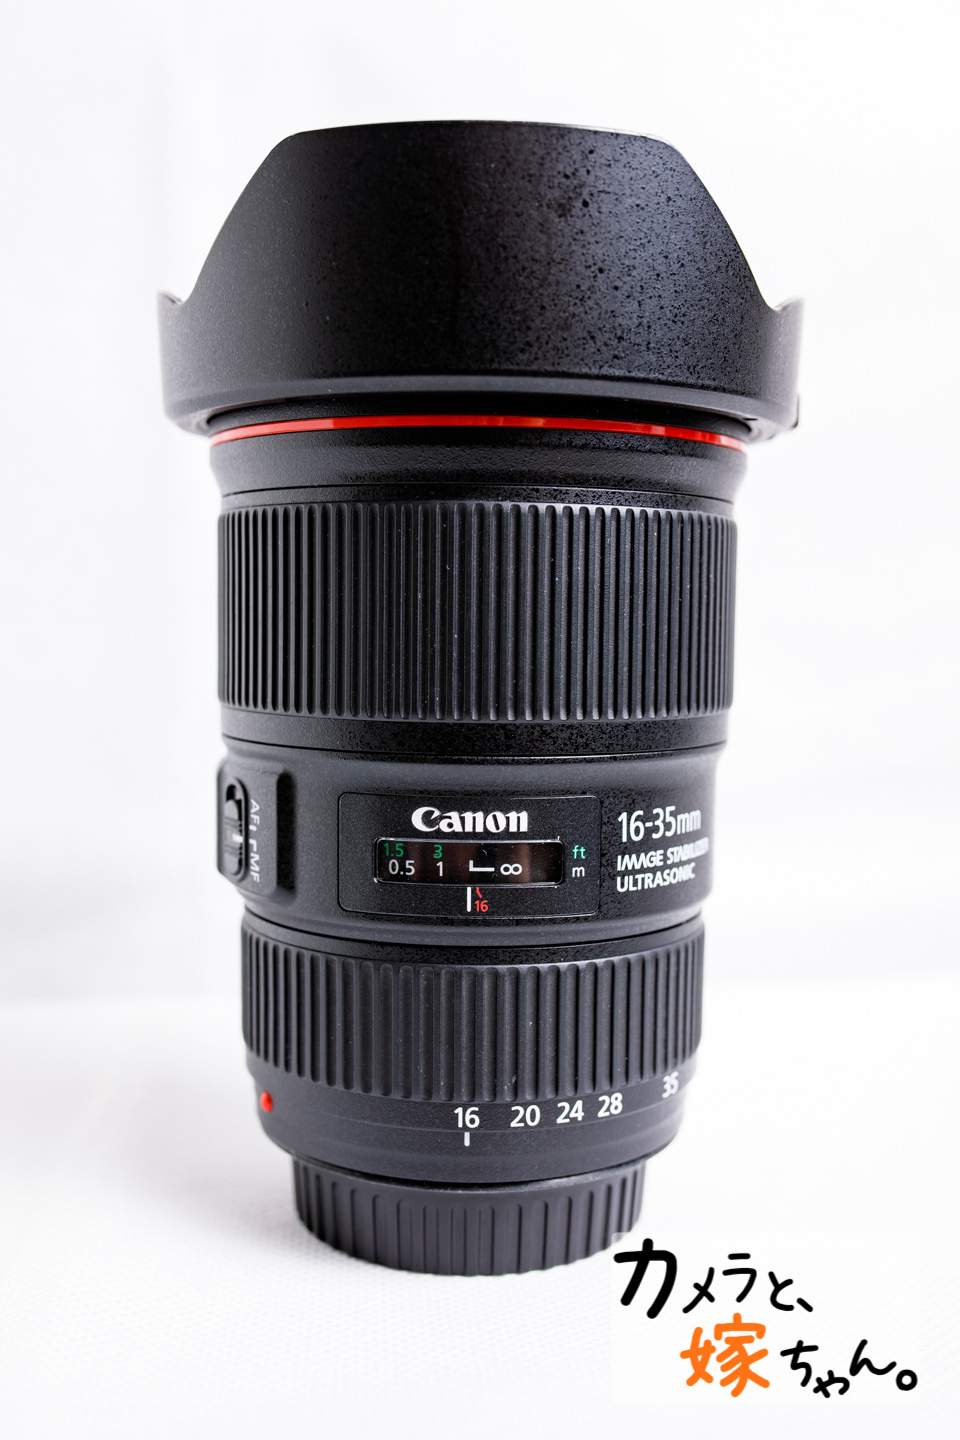 レビュー】Canon小三元レンズEF16-35mm F4L IS USM - カメラと、嫁ちゃん。